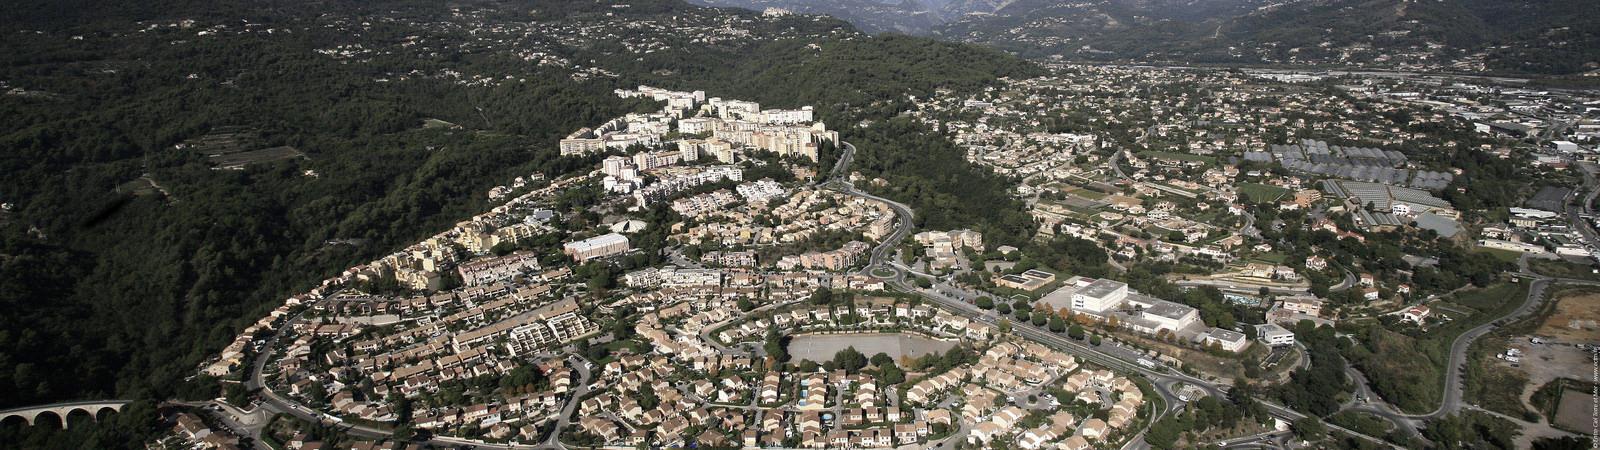 Nice Grid, Carros, Südfrankreich Carros hat 10 500 Einwohner und umfaßt das größte Industriegebiet des Départements Département Alpes-Maritimes ist eine elektrische «Halbinsel», versorgt durch eine